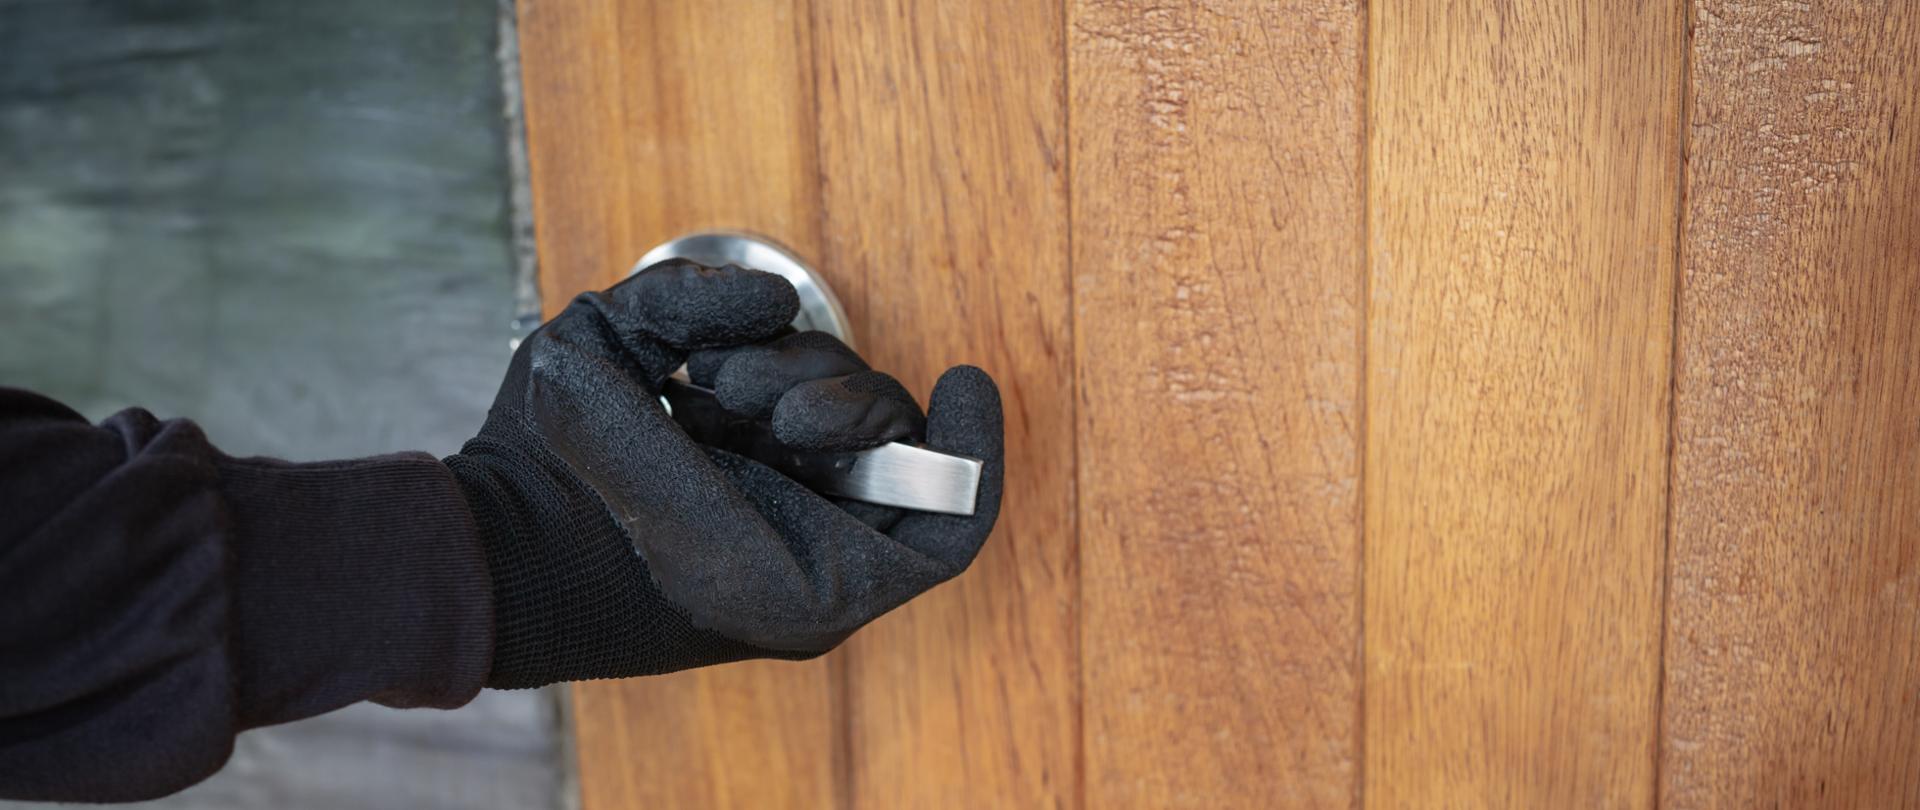 Widać rękę w czarnej rękawiczce, która trzyma klamkę otwierając drzwi